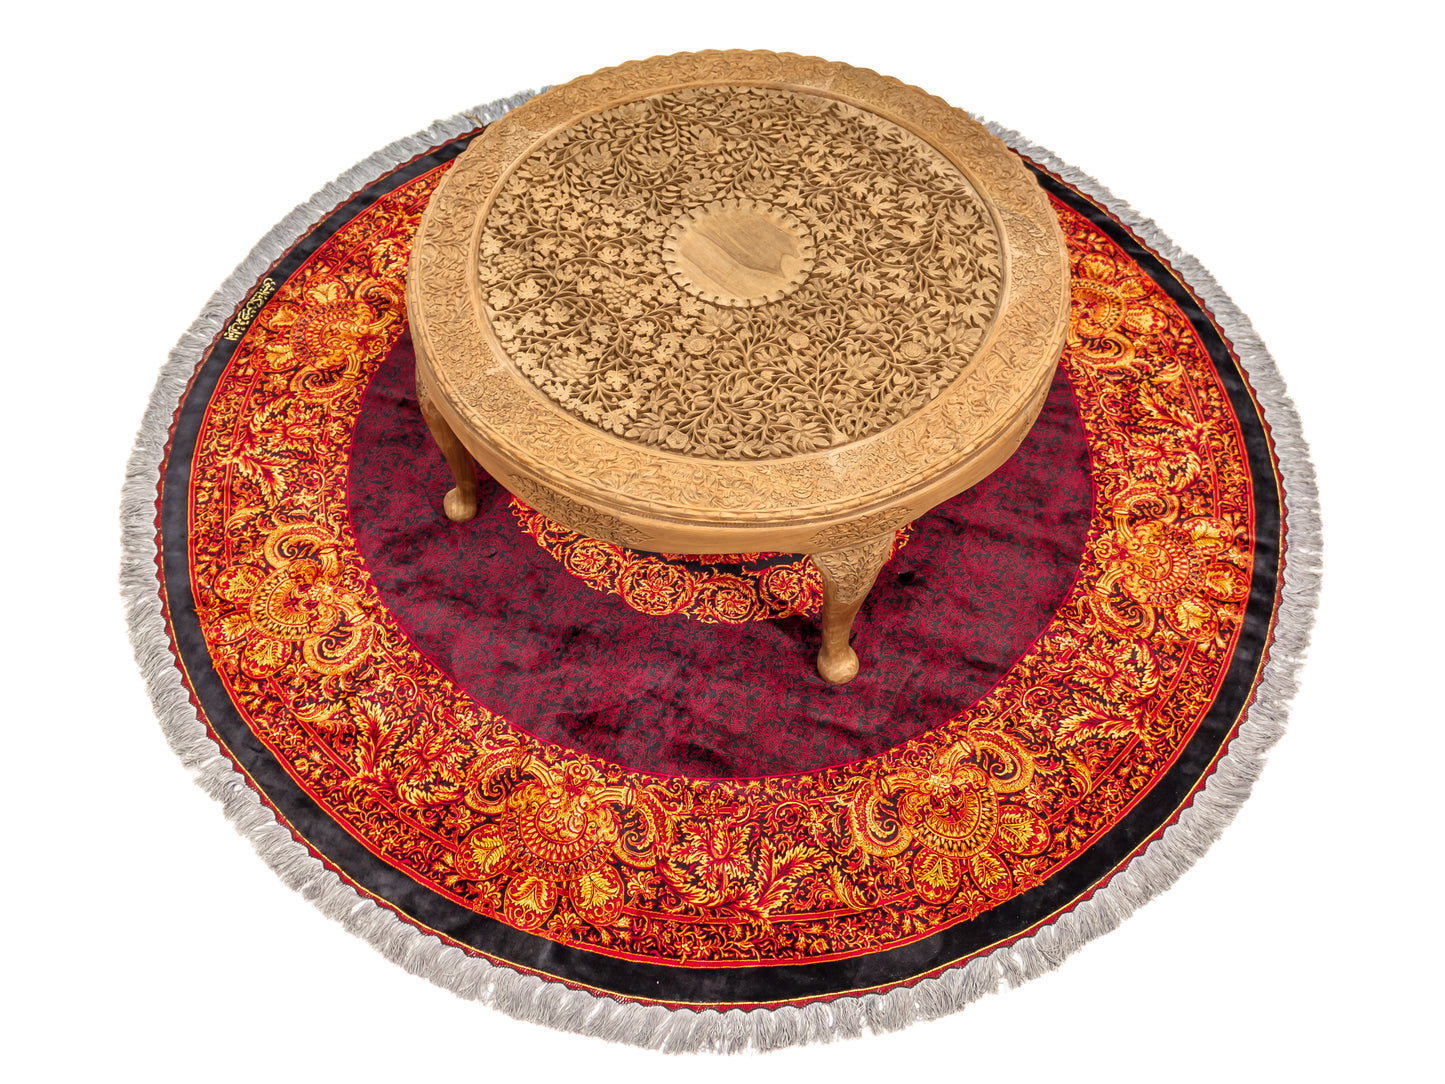 Handmade Walnut Table "4 seasons" product image #29720065343658